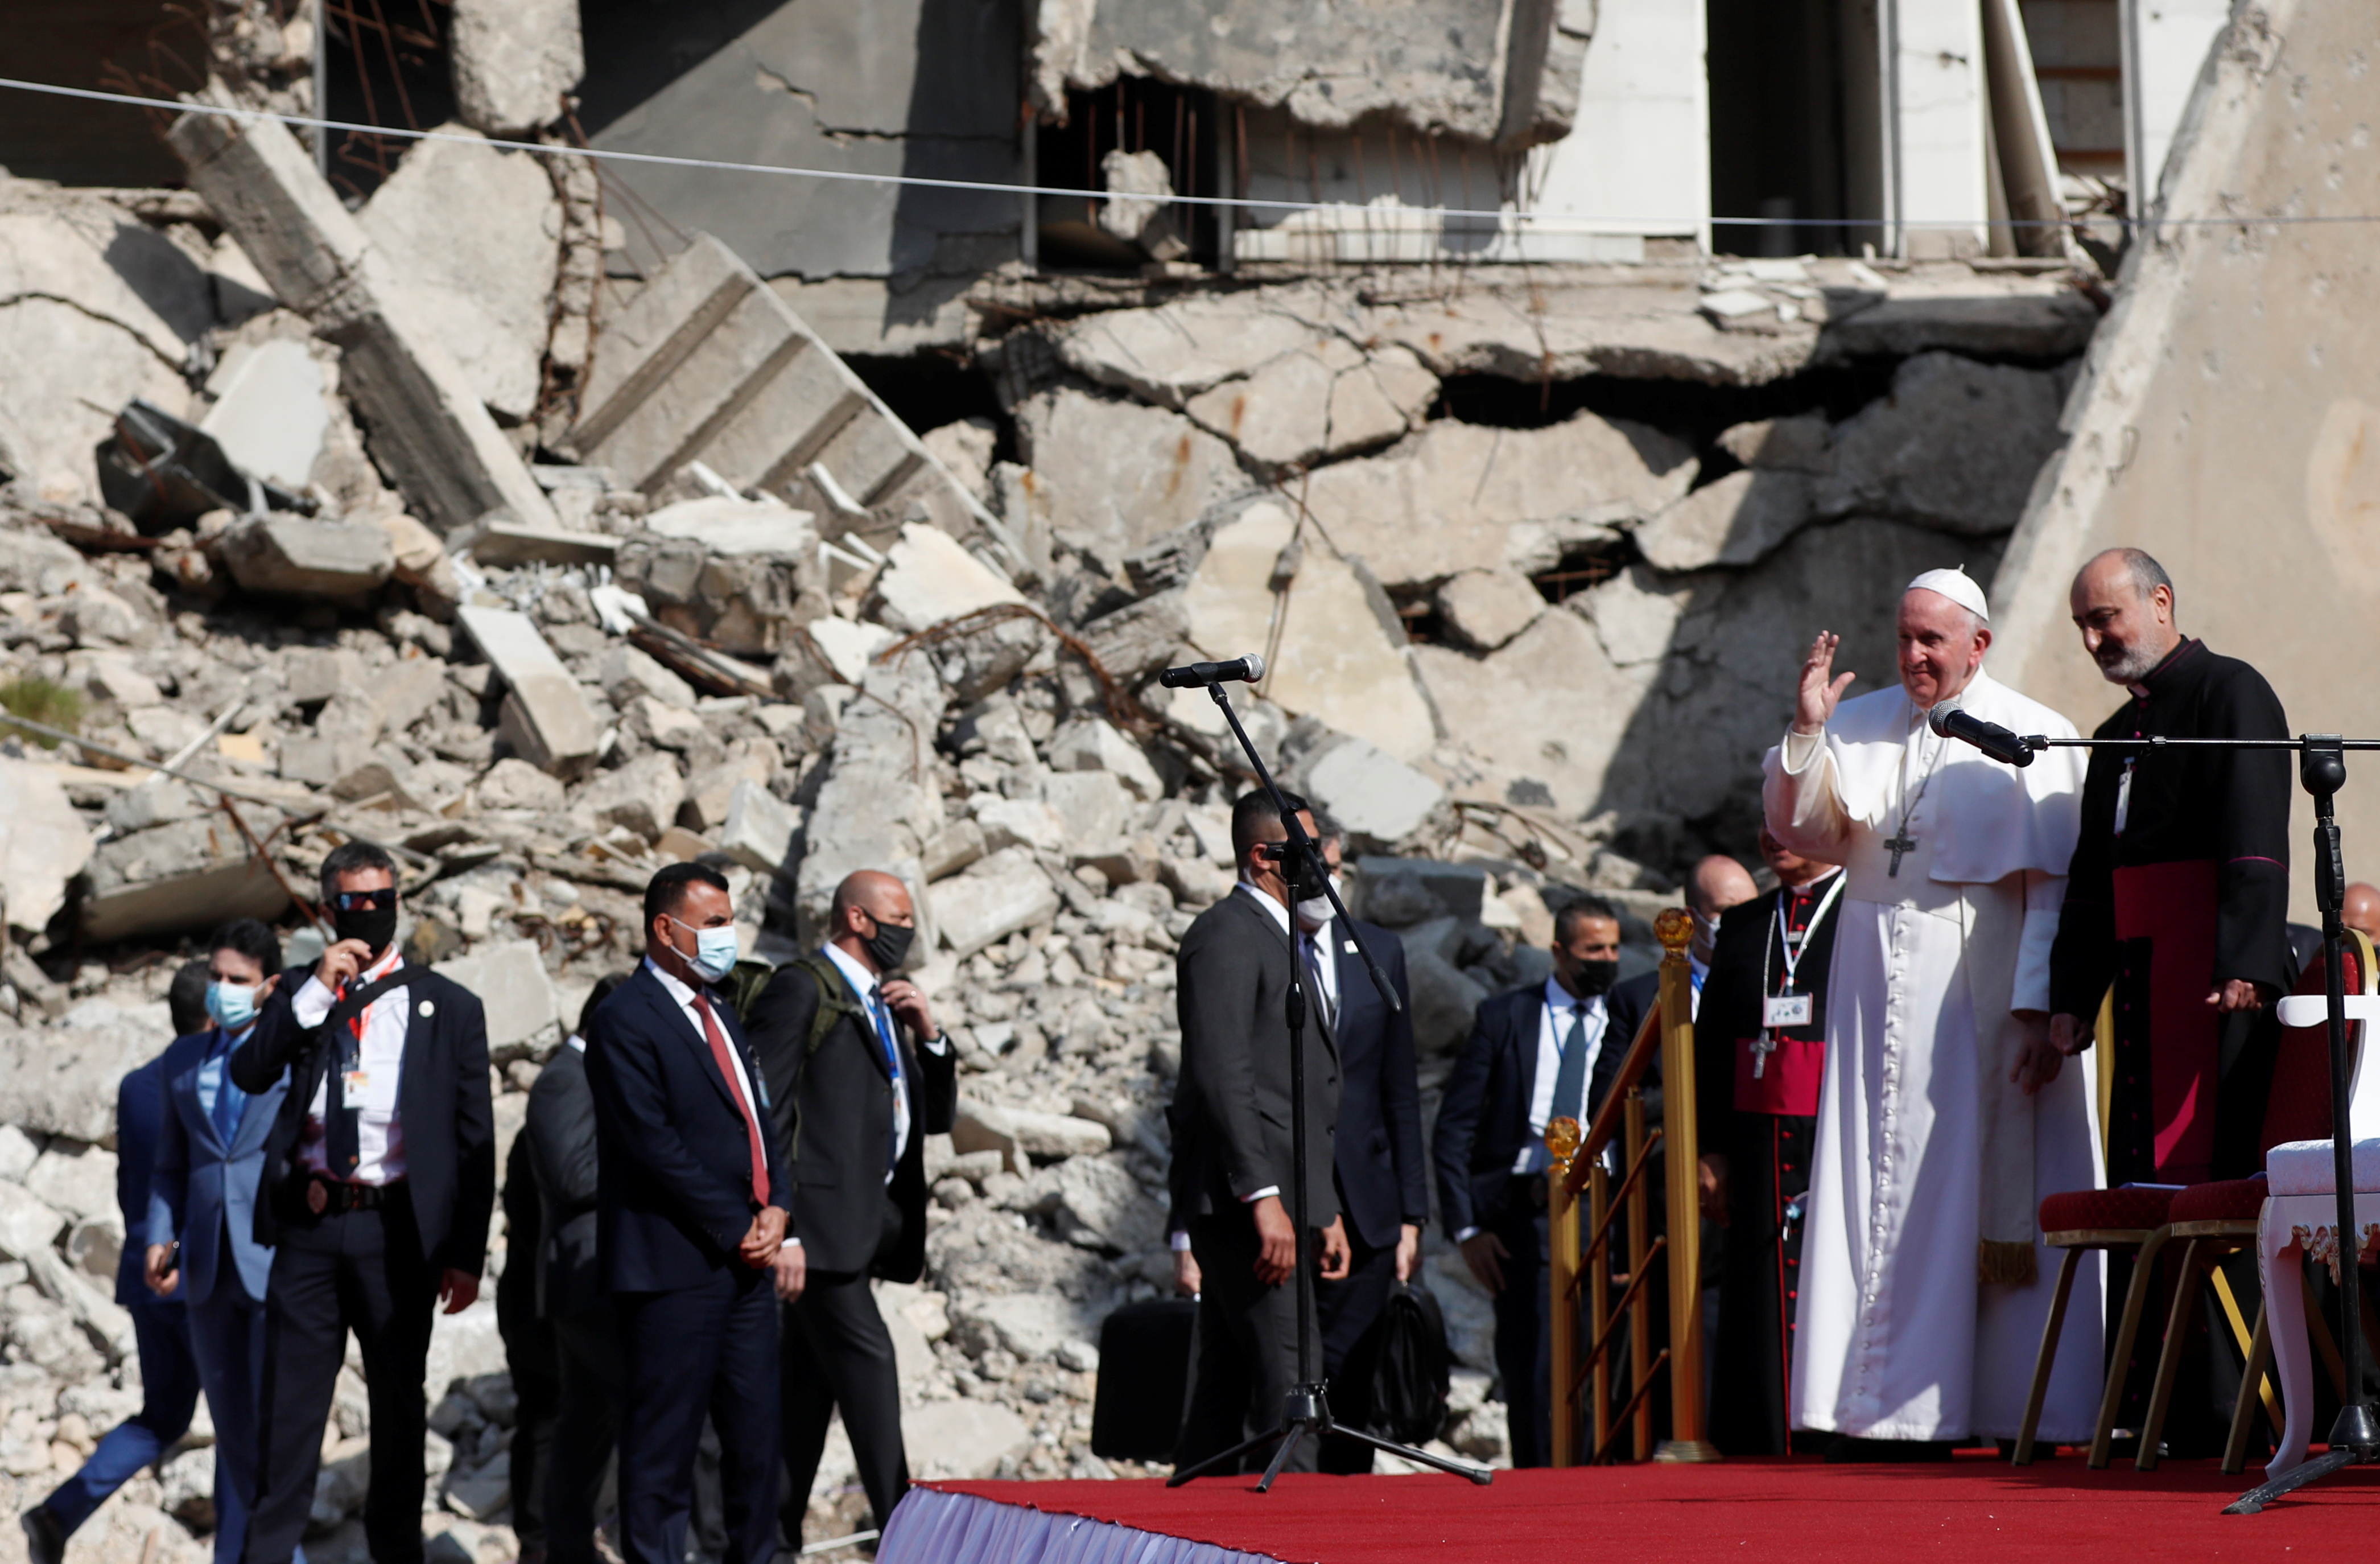 El Papa Francisco llega para orar por las víctimas de la guerra en 'Hosh al-Bieaa', en la Plaza de la Iglesia, en la ciudad vieja de Mosul

